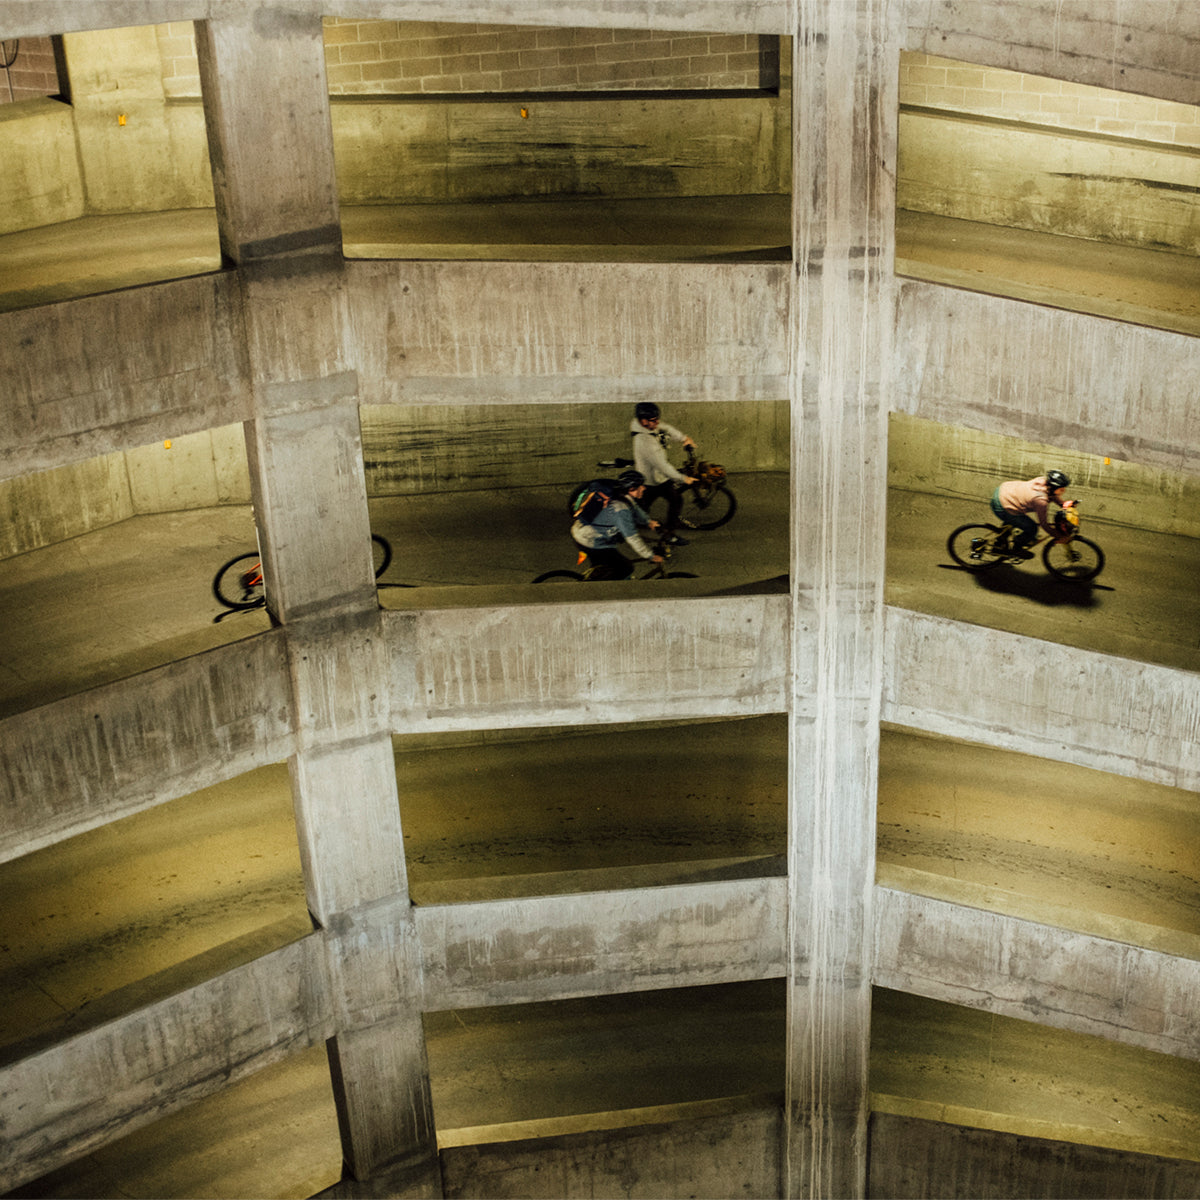 Biking in a parking garage